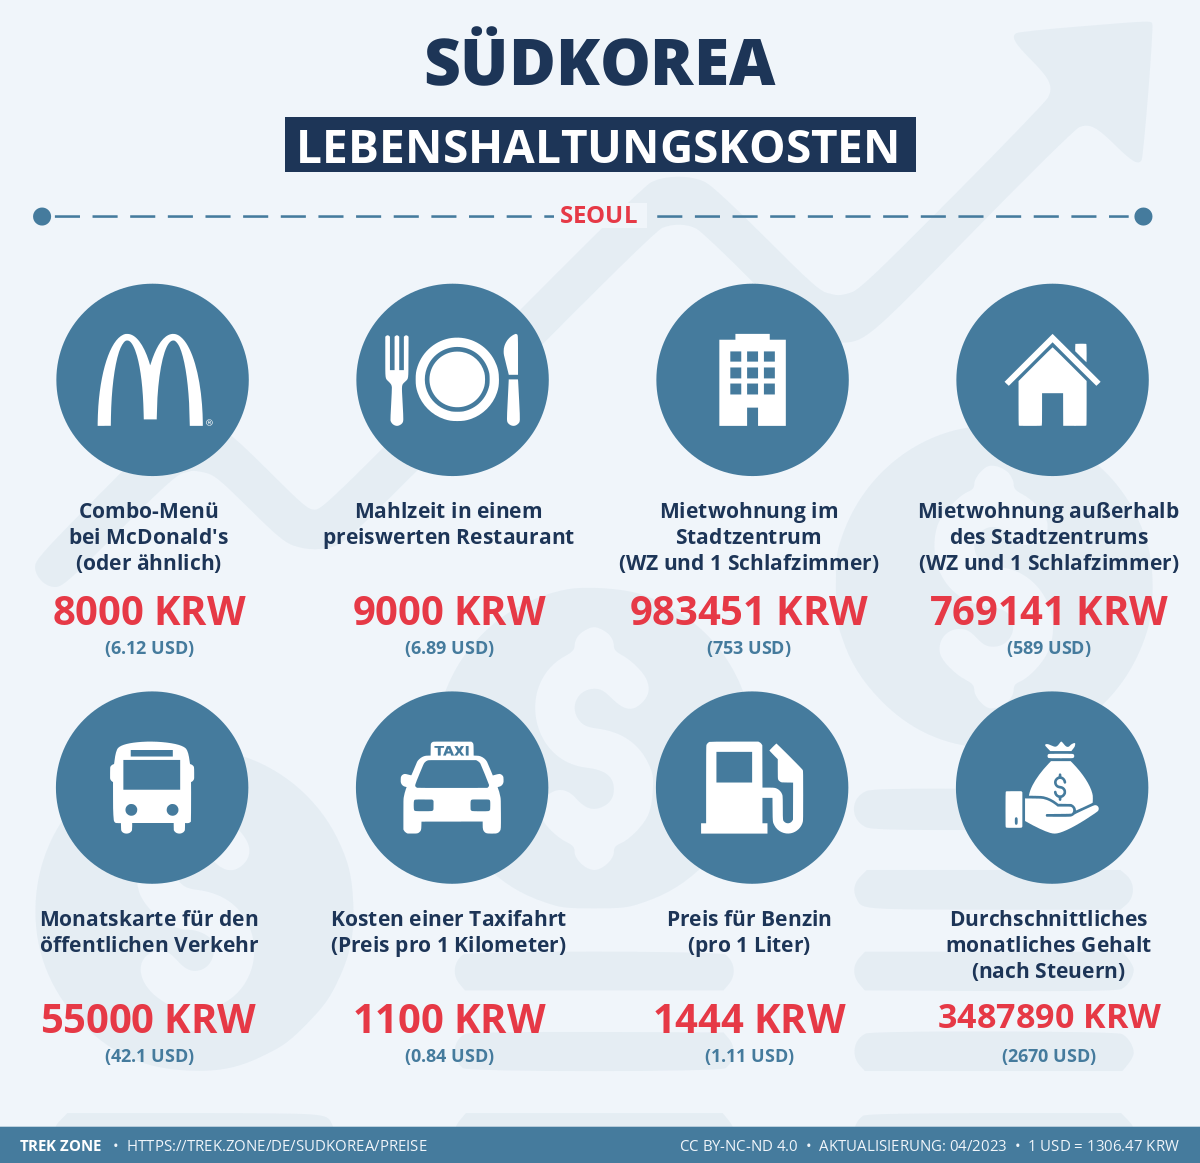 preise und lebenskosten sudkorea